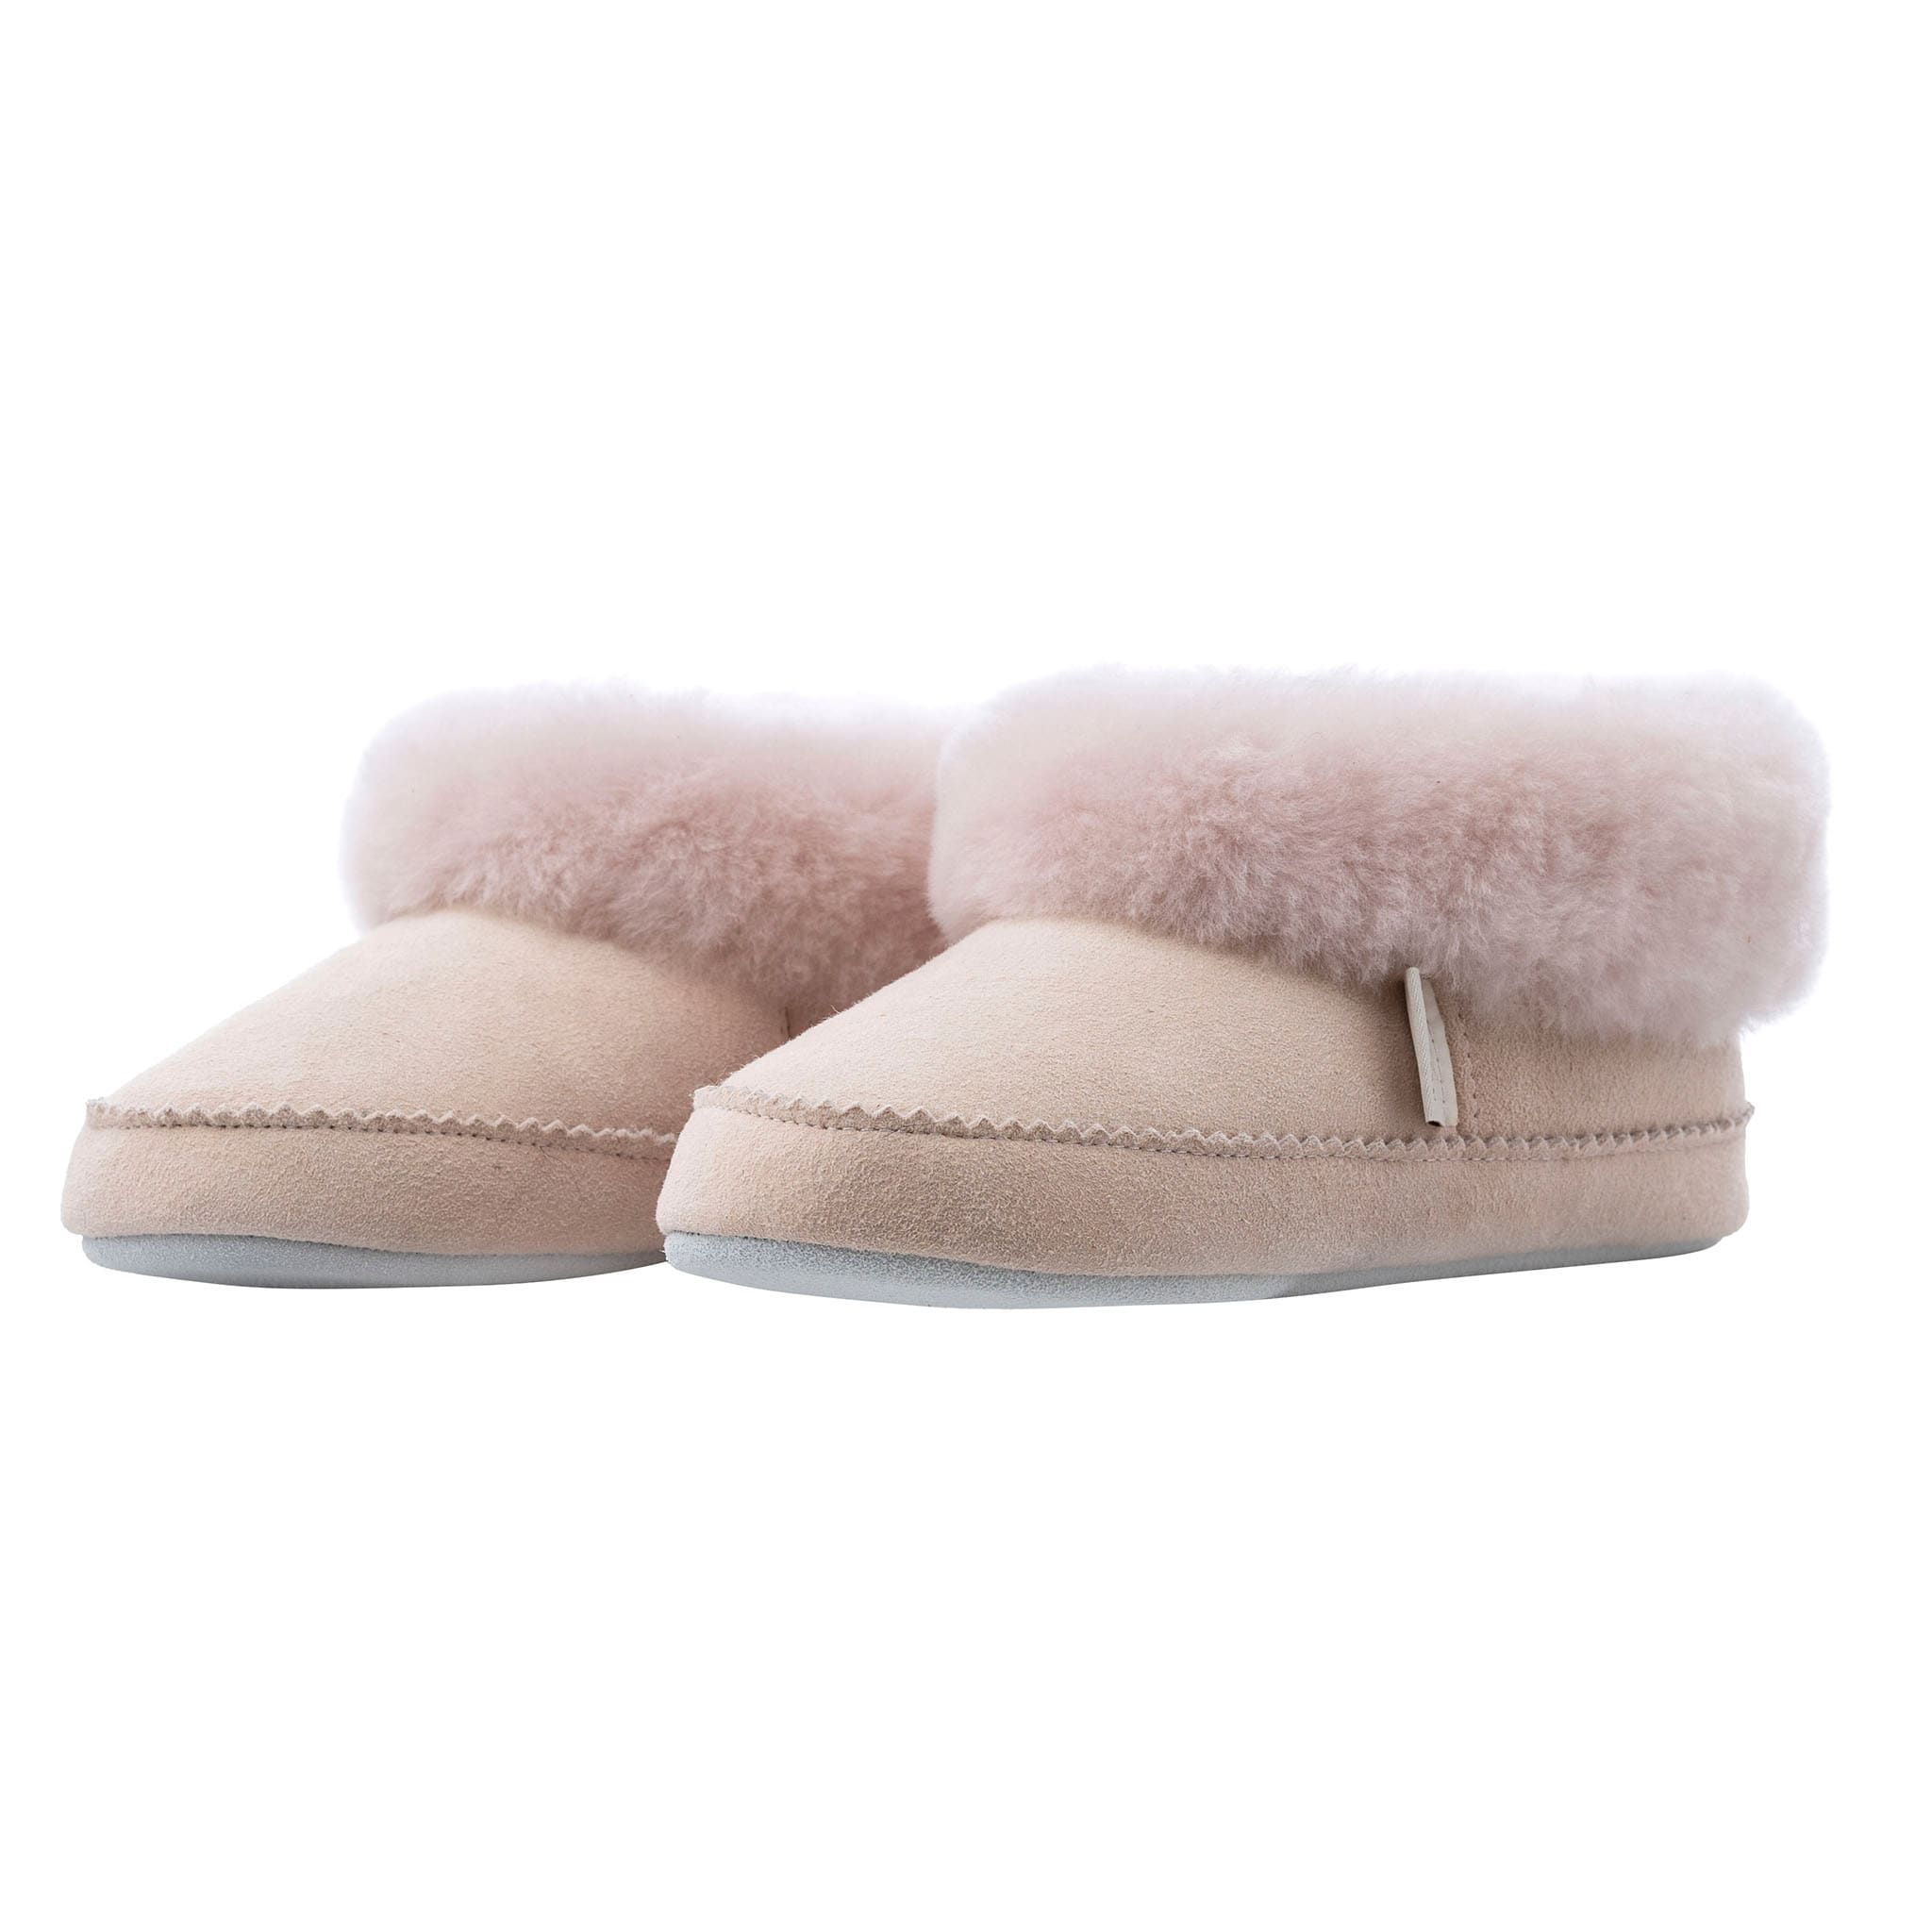 Piteå slippers , size 30-35